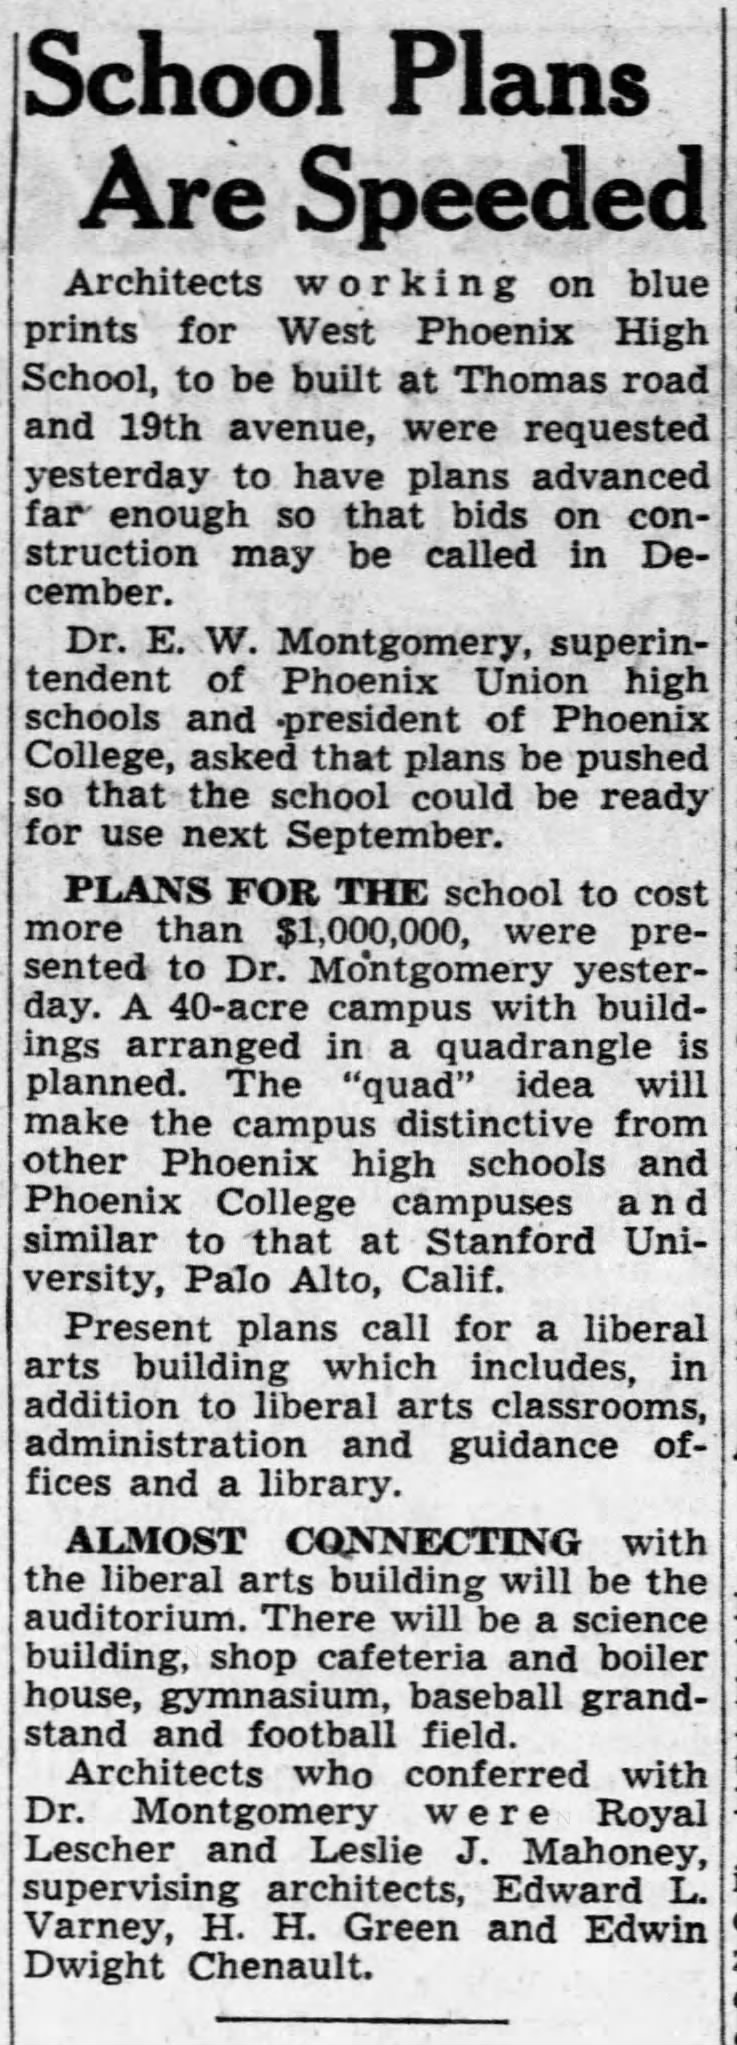 Edward Varney - Part of team designing West High School, Phoenix, AZ 9/12/1947